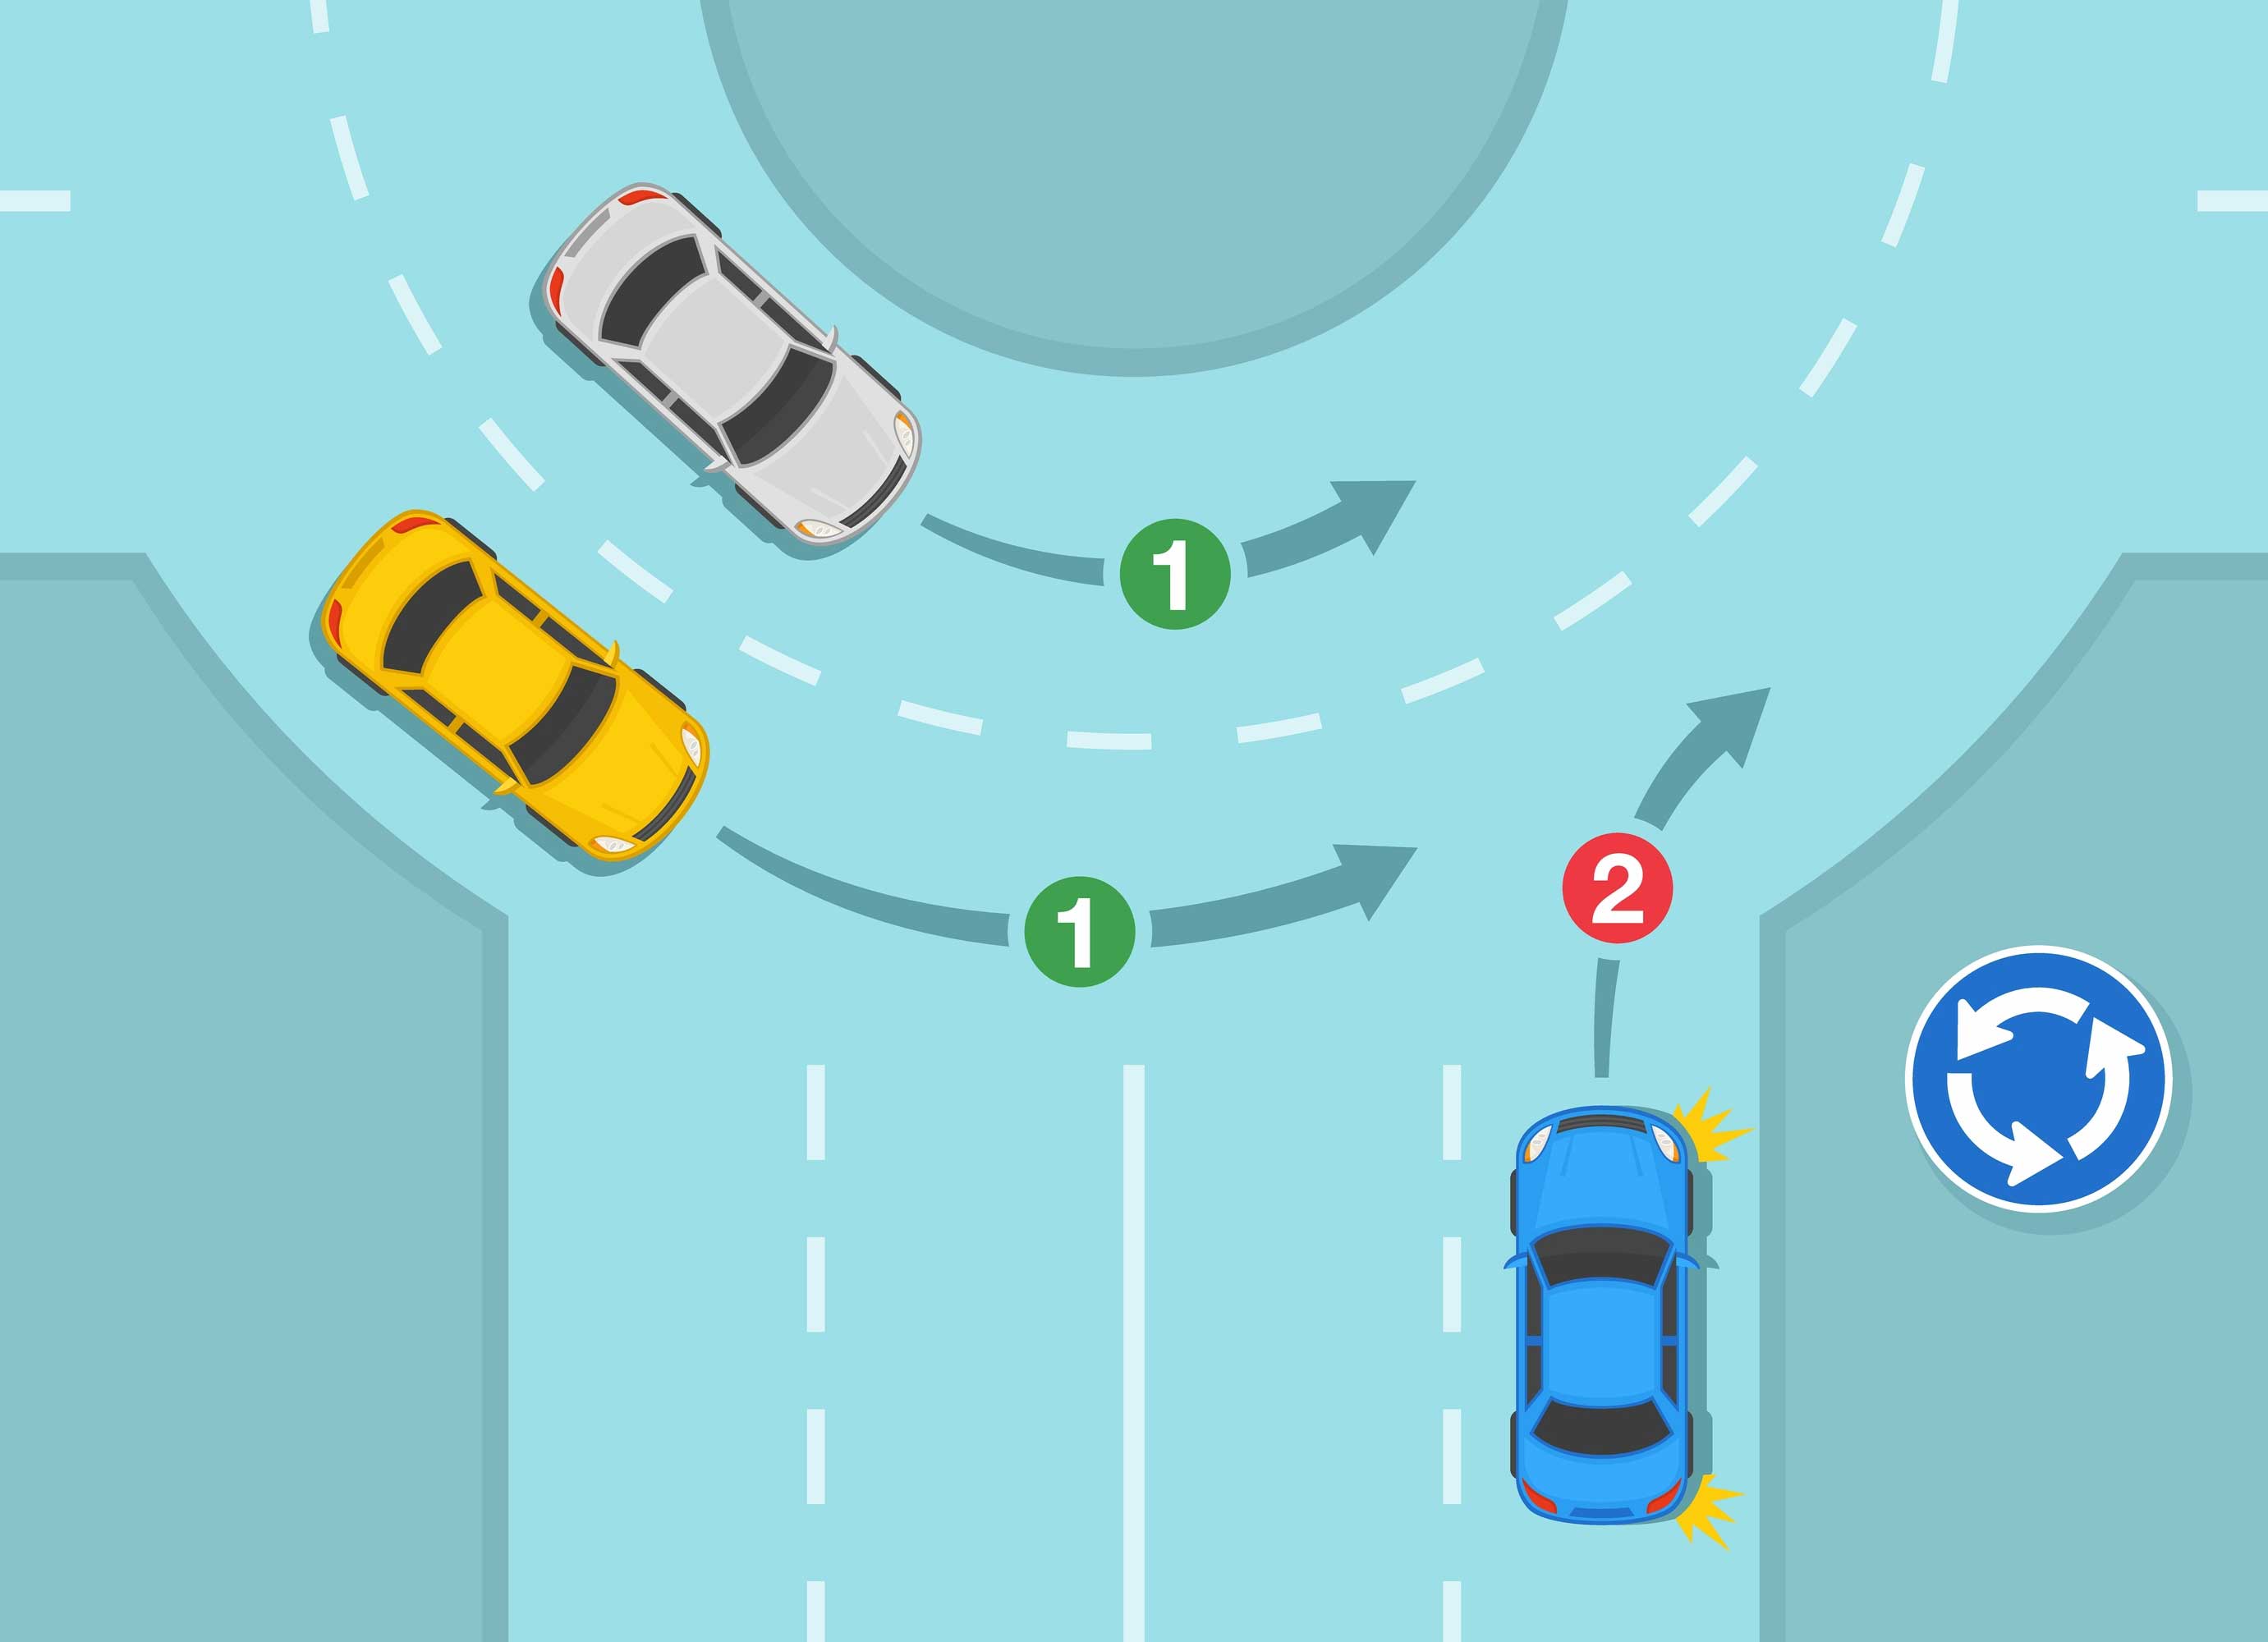 วิธีขับรถในเส้นทางเอก ทางโท ให้ปลอดภัย